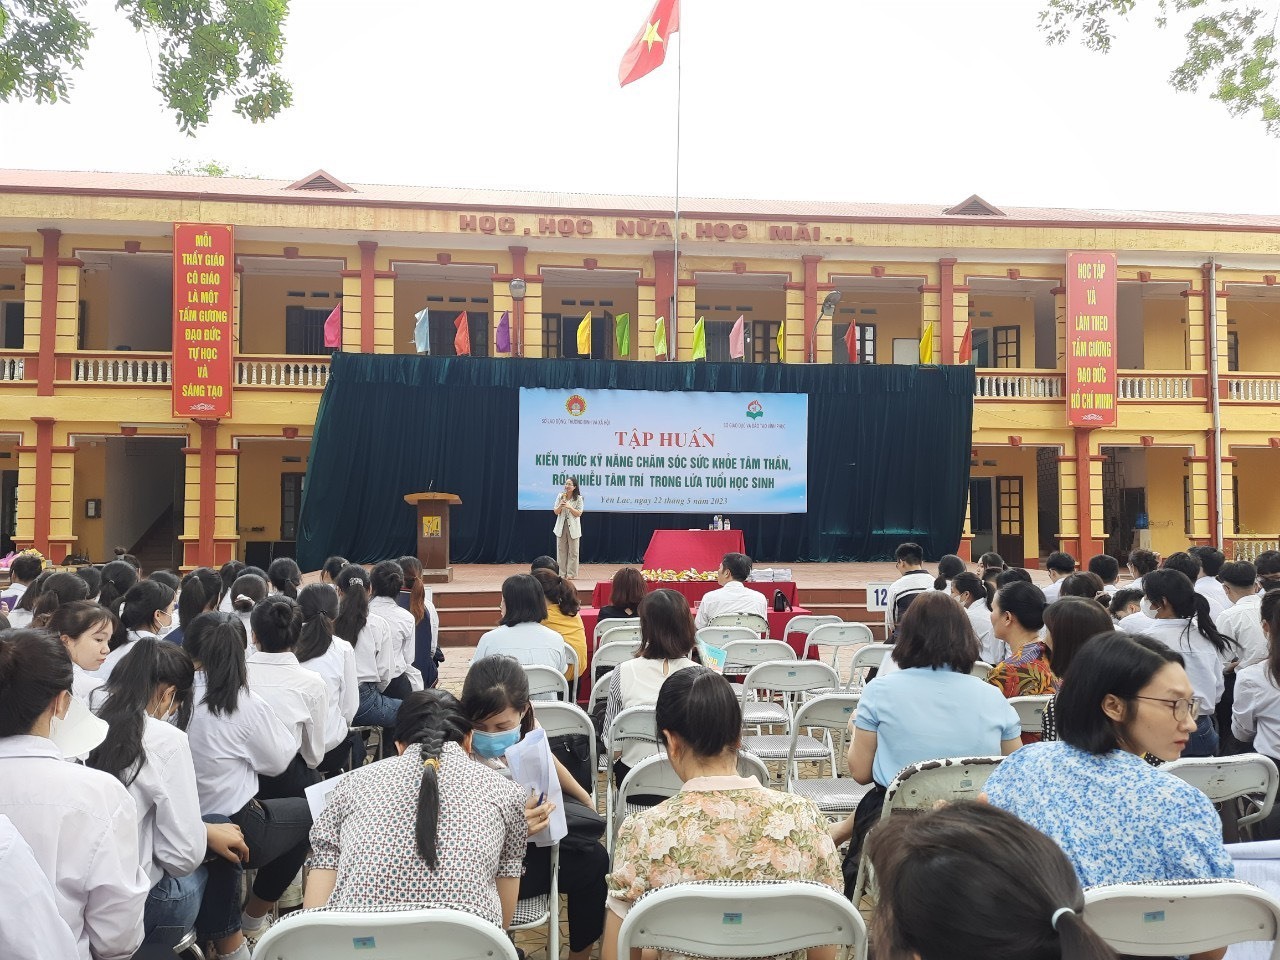 Thạc sỹ Lưu Thị Phương Loan chia sẻ trong chương trình tập huấn chăm sóc sức khỏe tâm thần học đường tại các trường THCS và THPT tỉnh Vĩnh Phúc. Ảnh: Nhân vật cung cấp